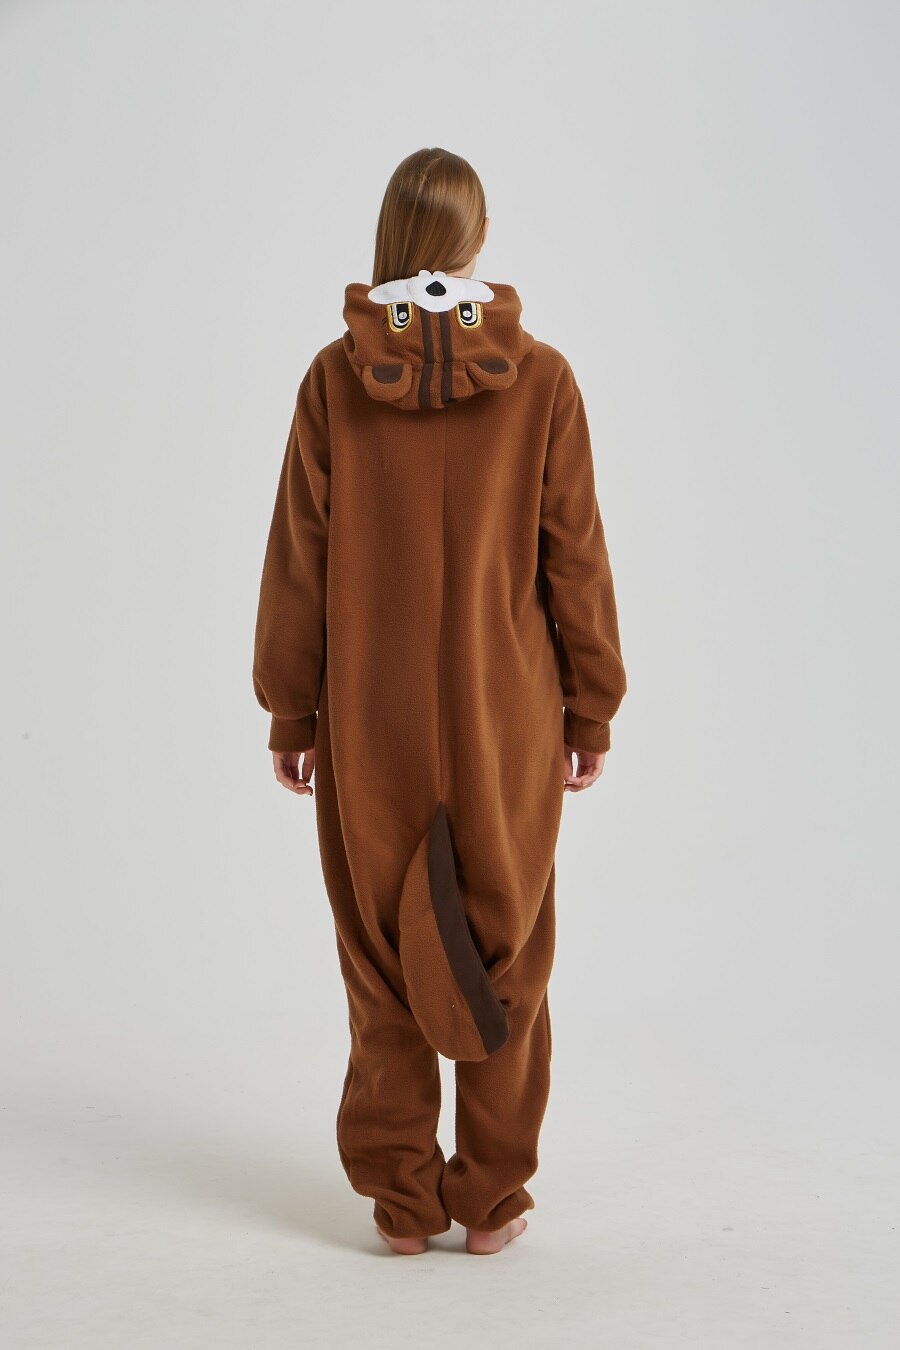 Unisex Squirrel Kigurumis Women Onesies Adult Winter Pajama Funny Jumpsuit Brown Polar Fleece Animal Overalls Halloween Suit